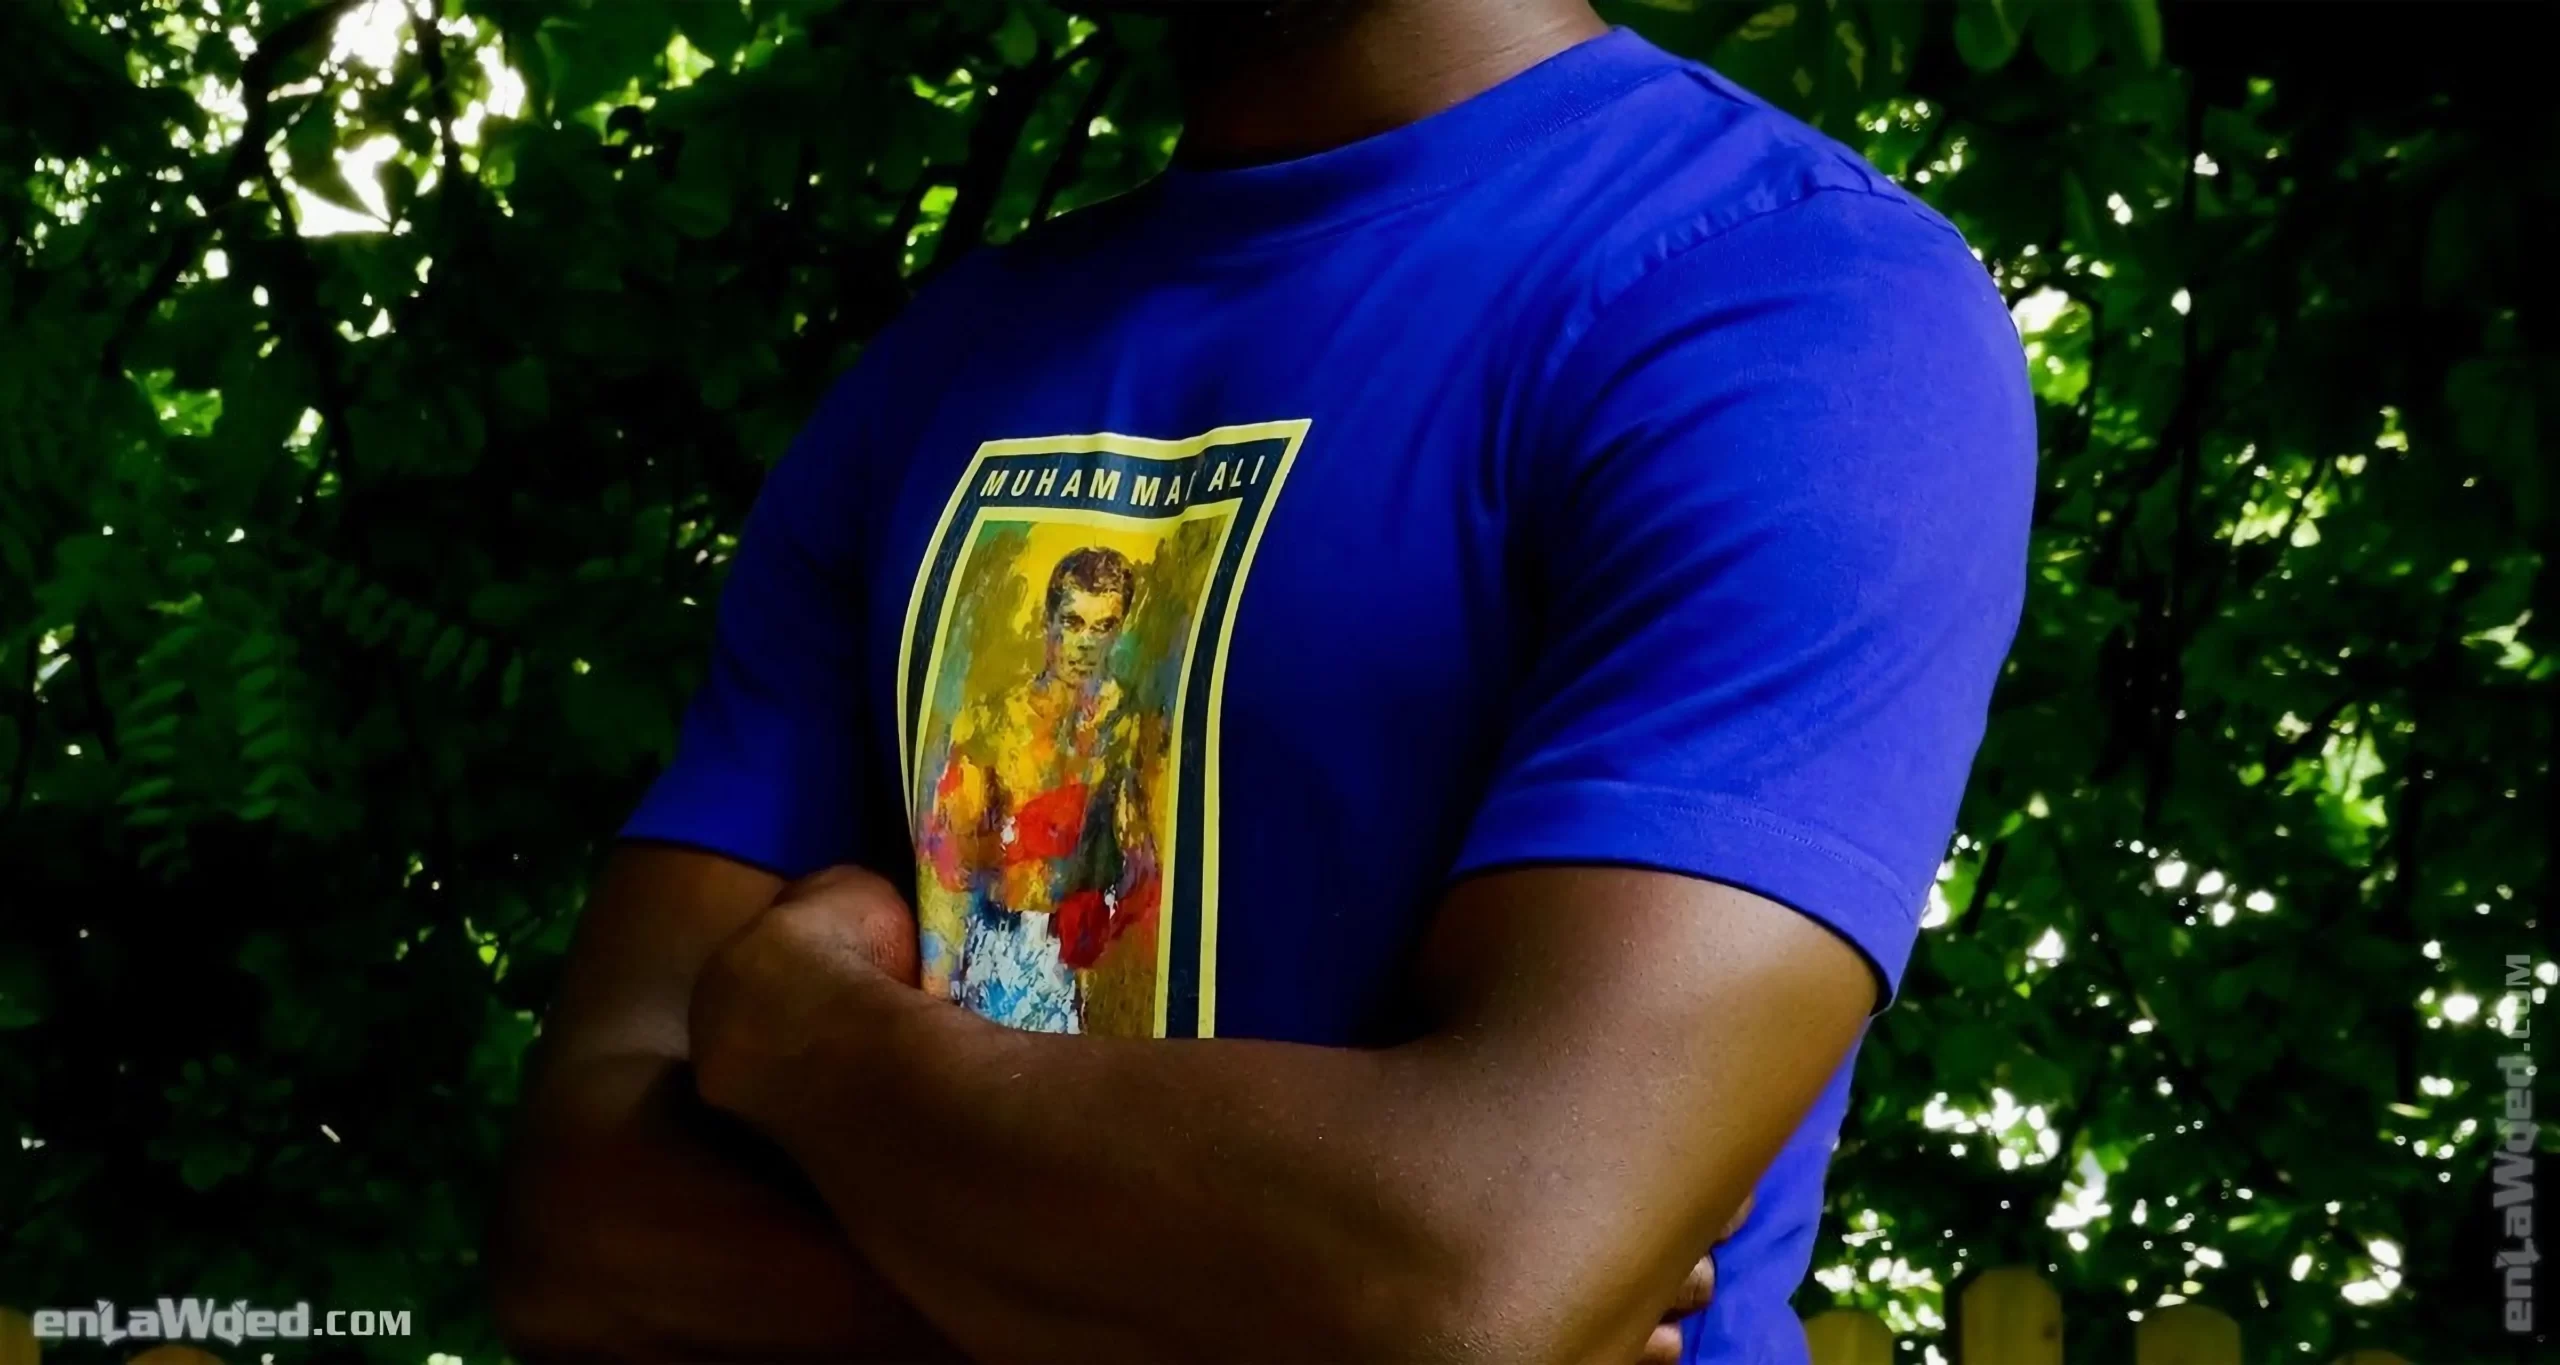 Men’s 2007 Muhammad Ali Respect T-Shirt by Adidas: Tawdry (EnLawded.com file #lmc5rm9i5j6wofz13e)